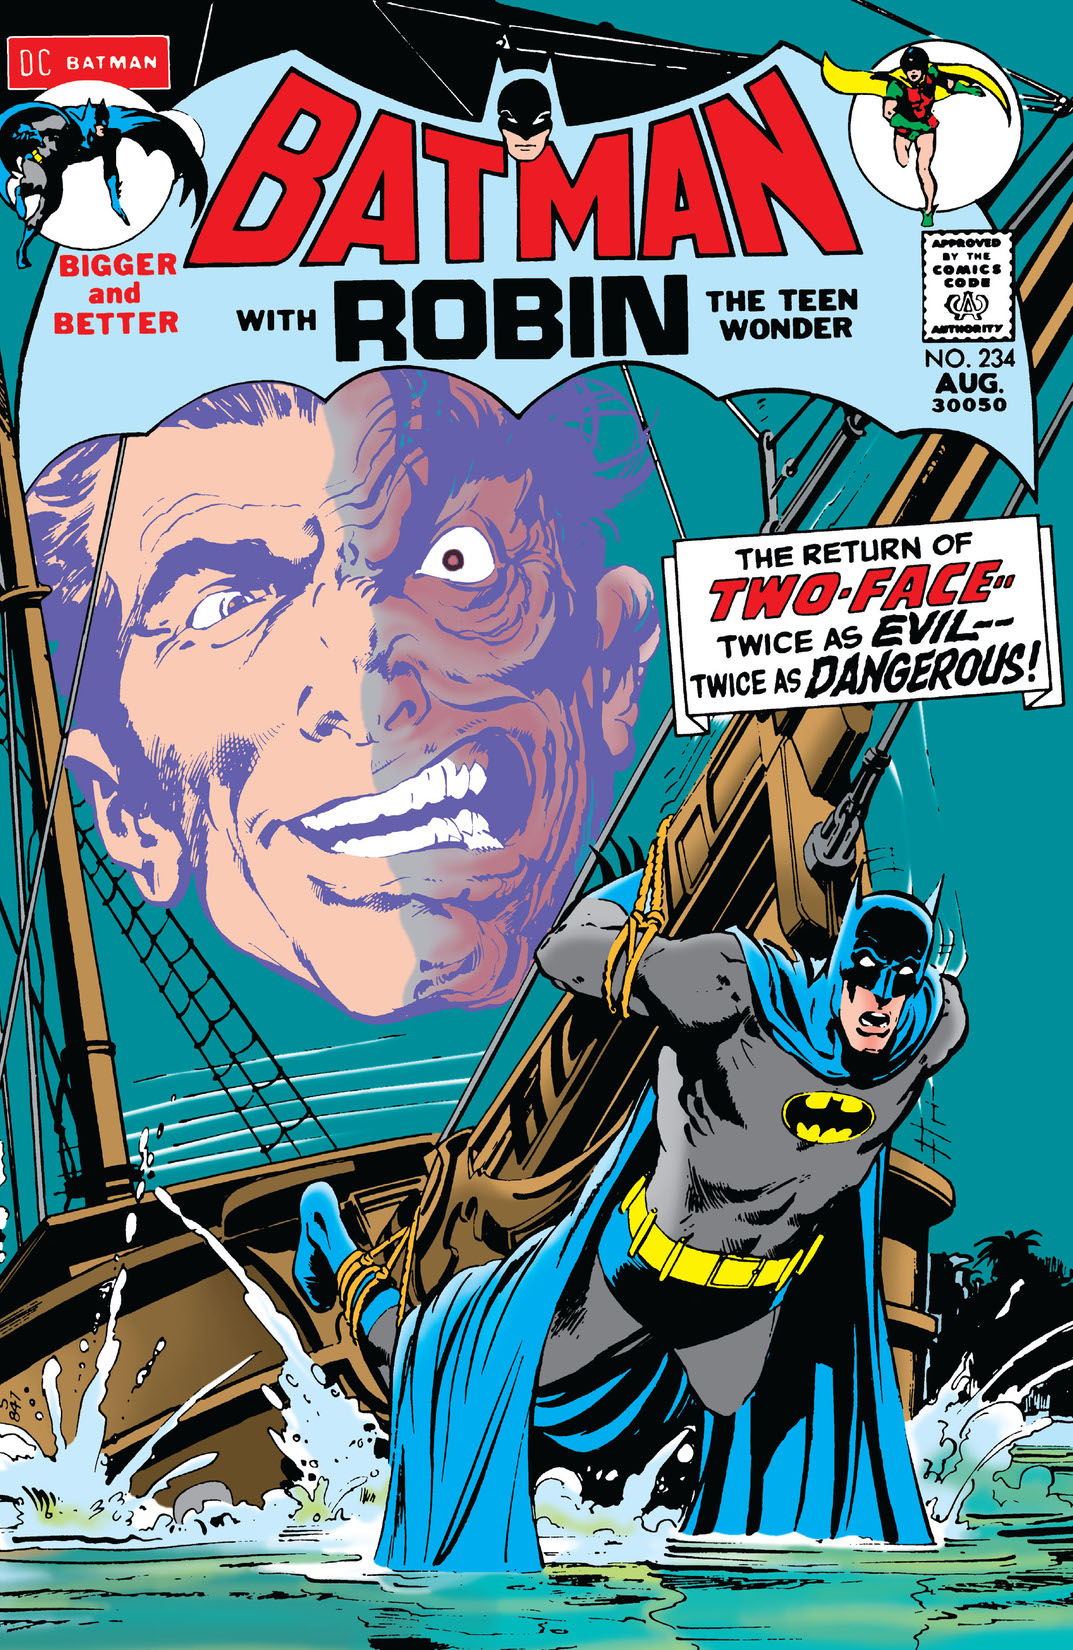 Batman (1940-) #234 preview images